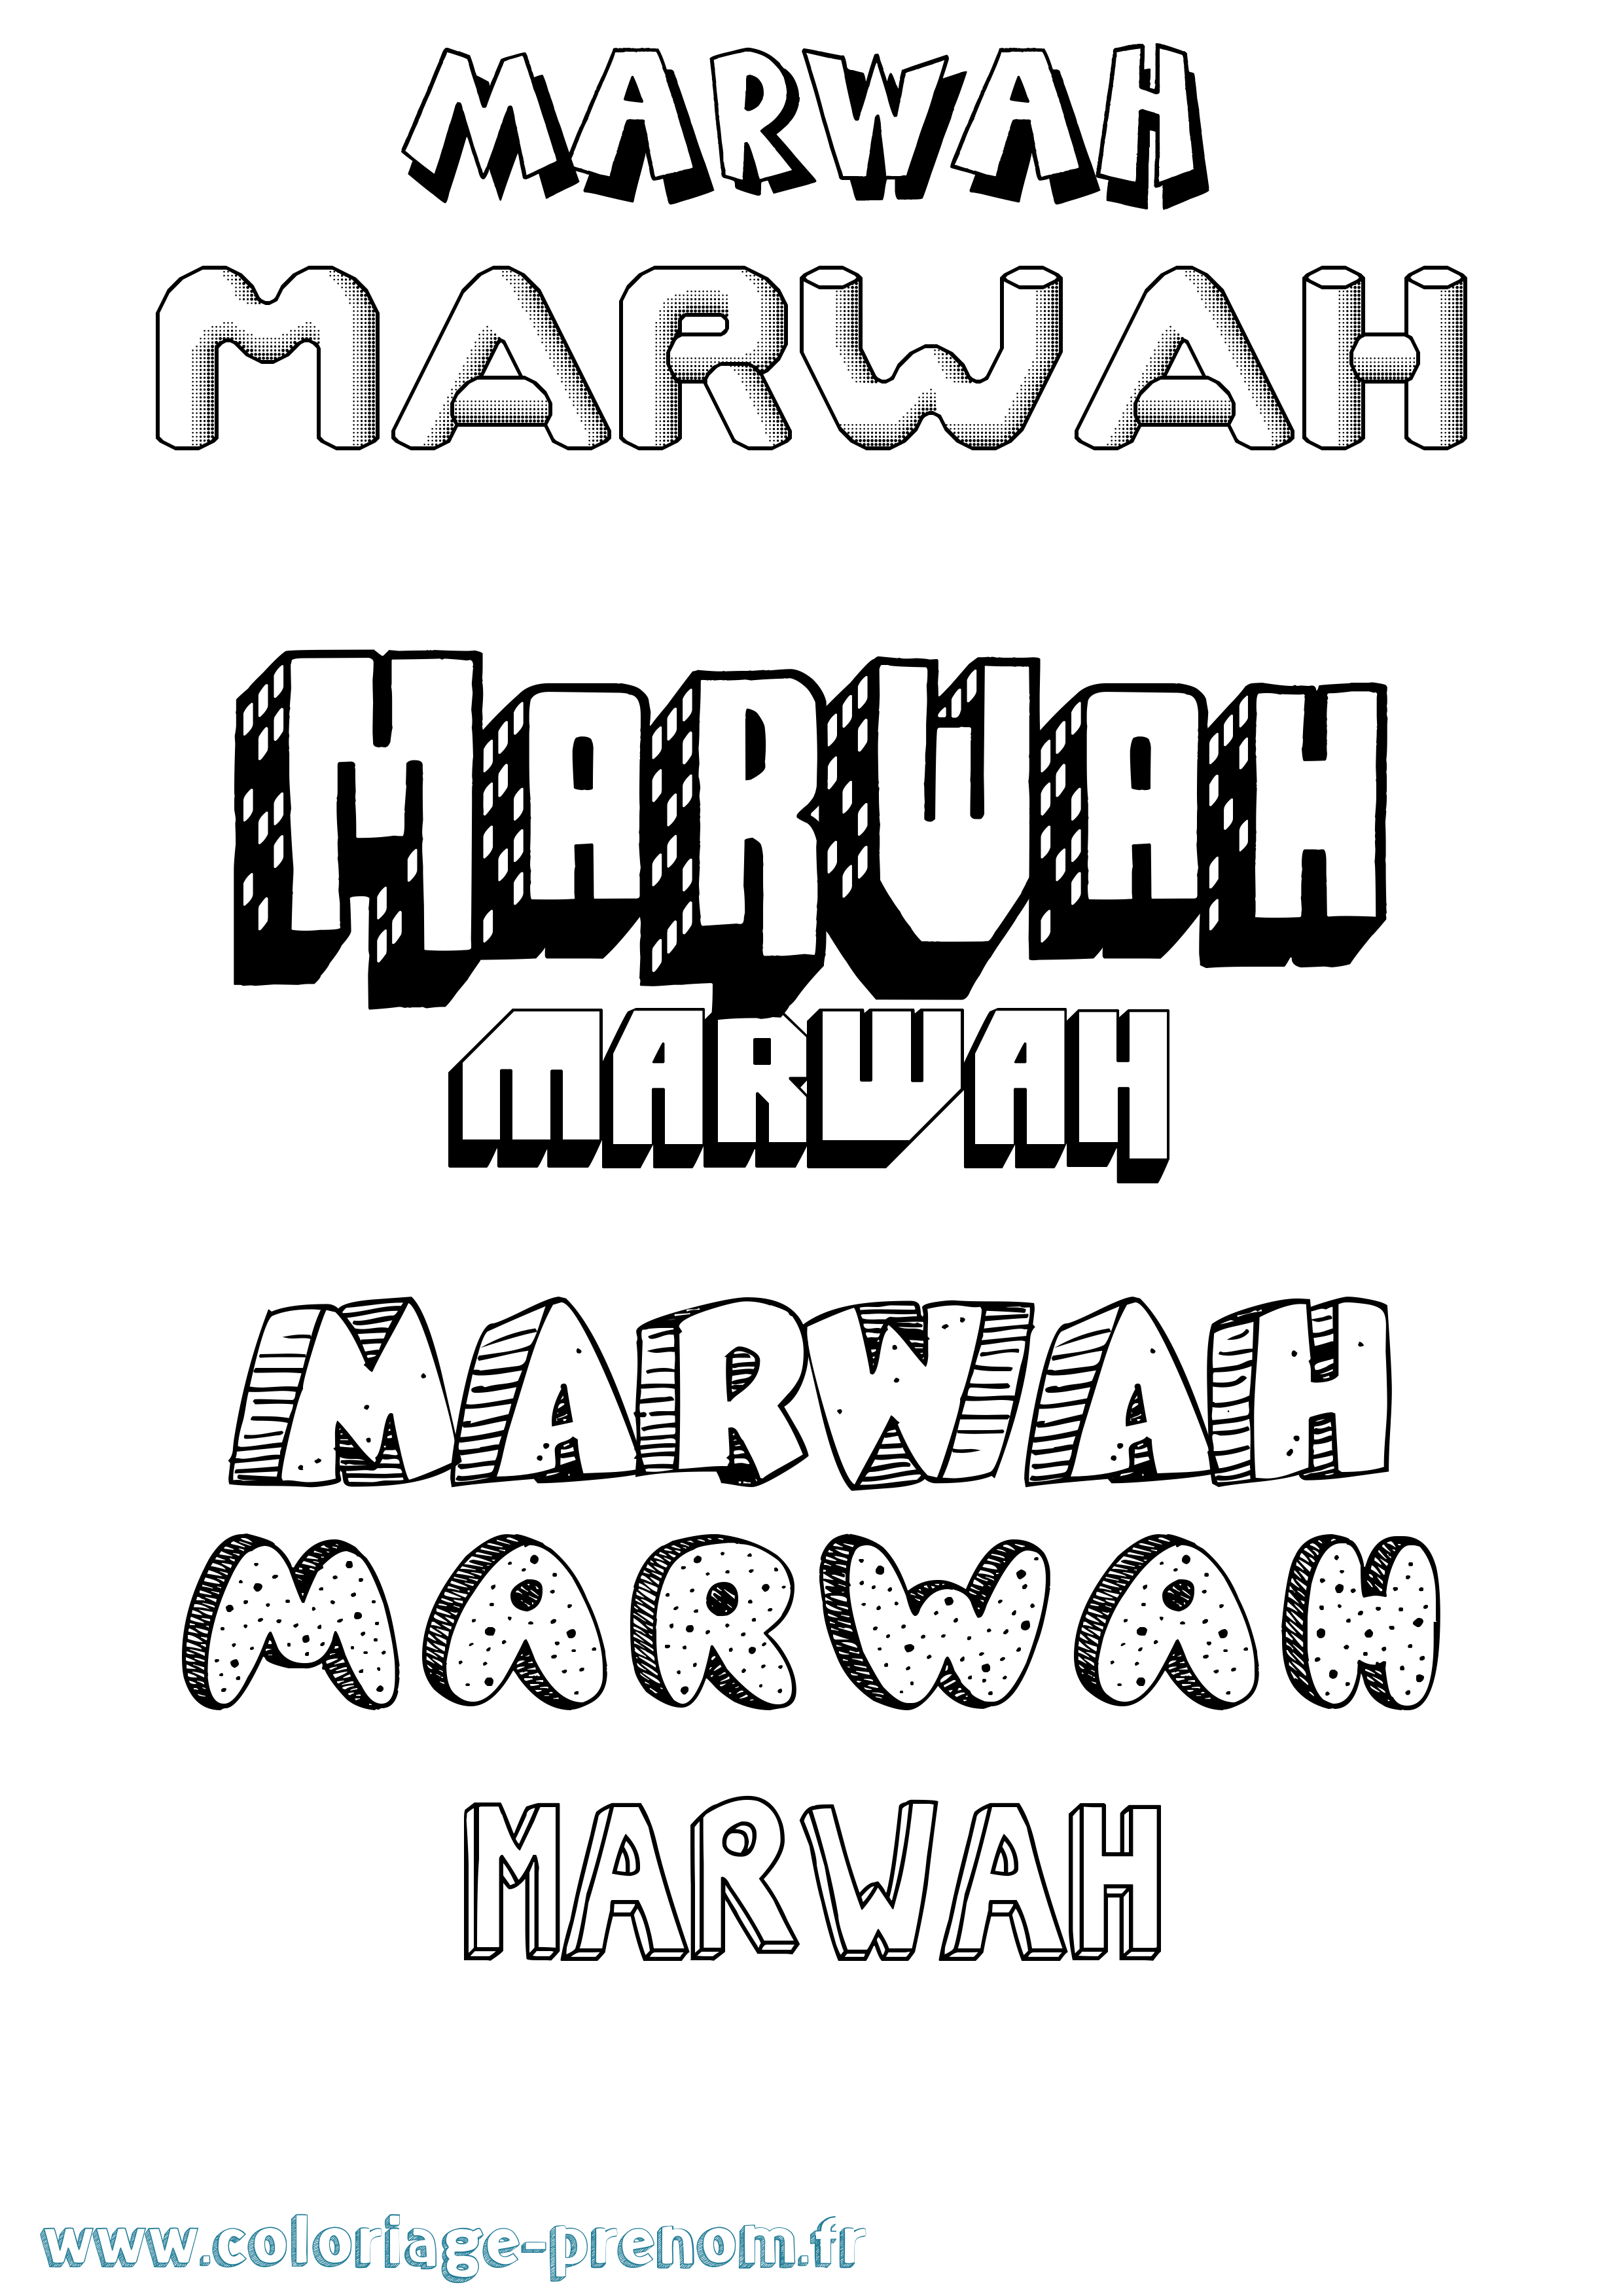 Coloriage prénom Marwah Effet 3D